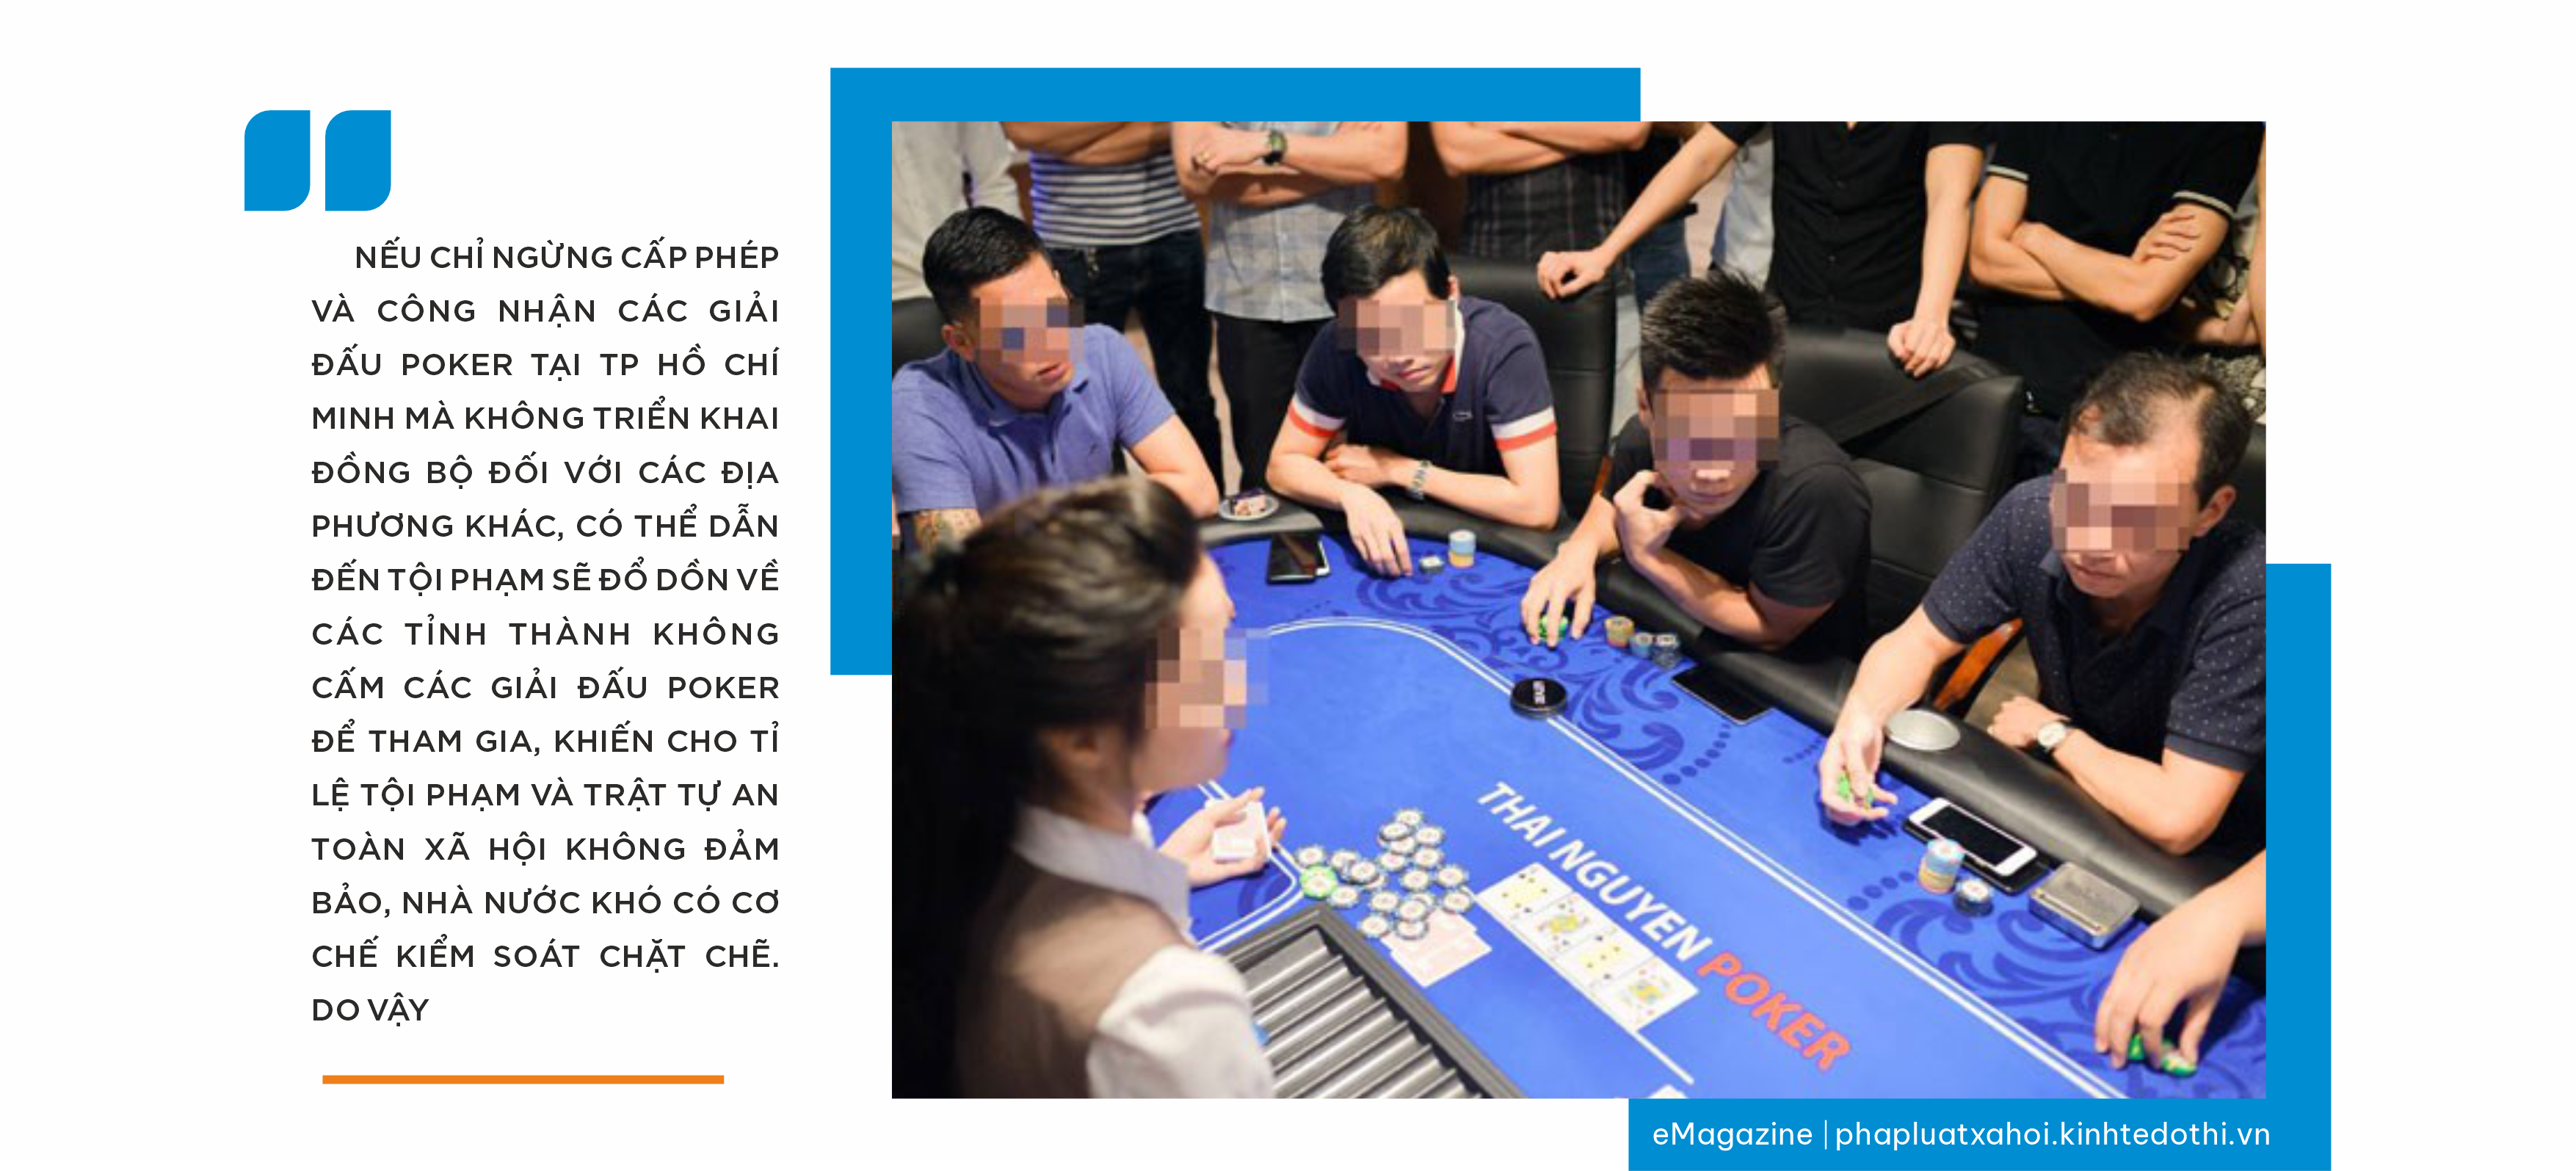 Kỳ 4: Poker dưới góc nhìn chuyên gia